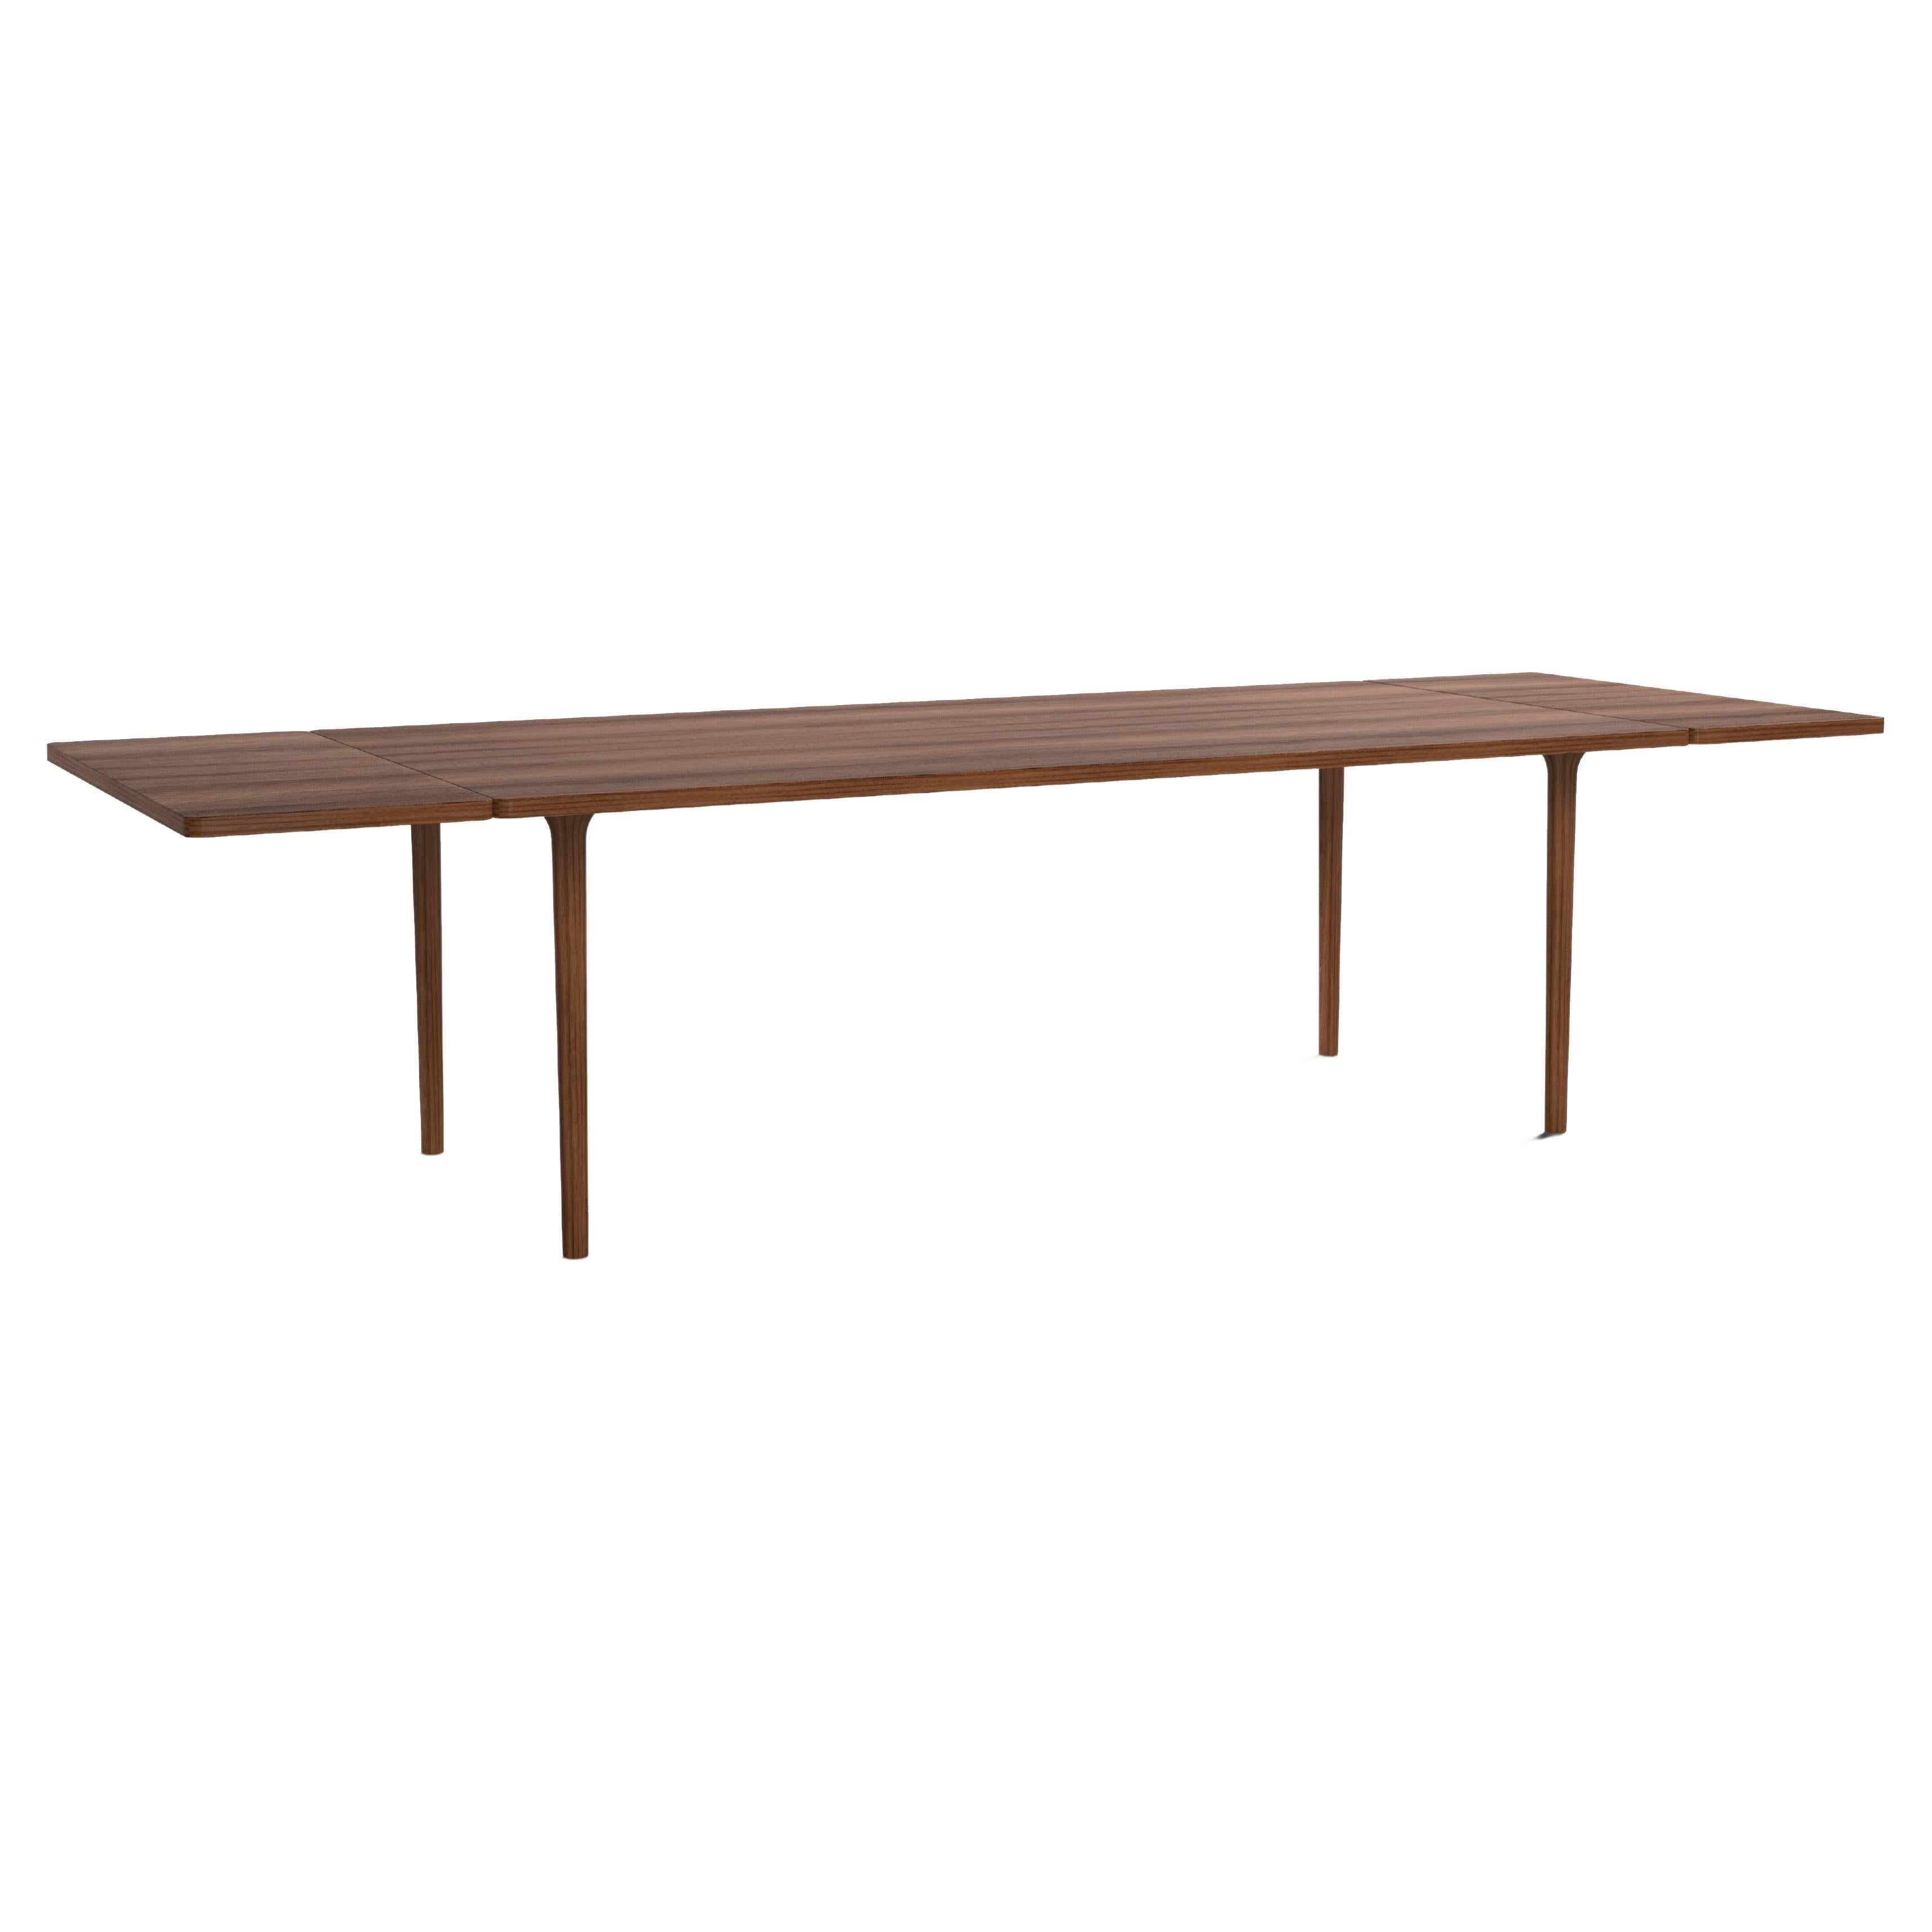 Moderner Tisch aus Walnussholz, ausziehbar, minimalistisch